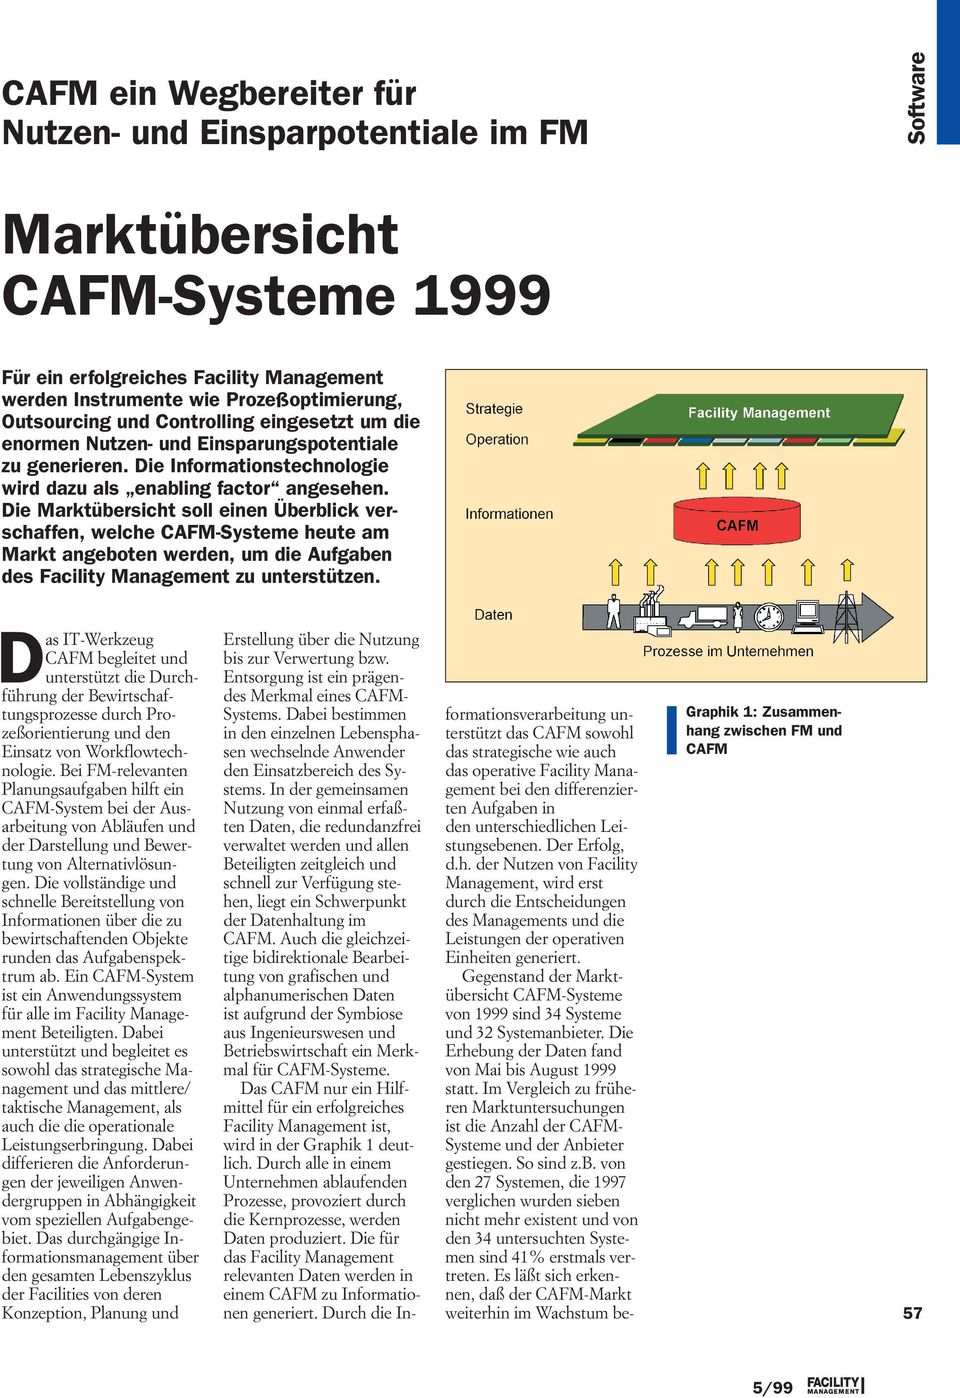 Die Marktübersicht soll einen Überblick verschaffen, welche CAFM-Systeme heute am Markt angeboten werden, um die Aufgaben des Facility Management zu unterstützen.